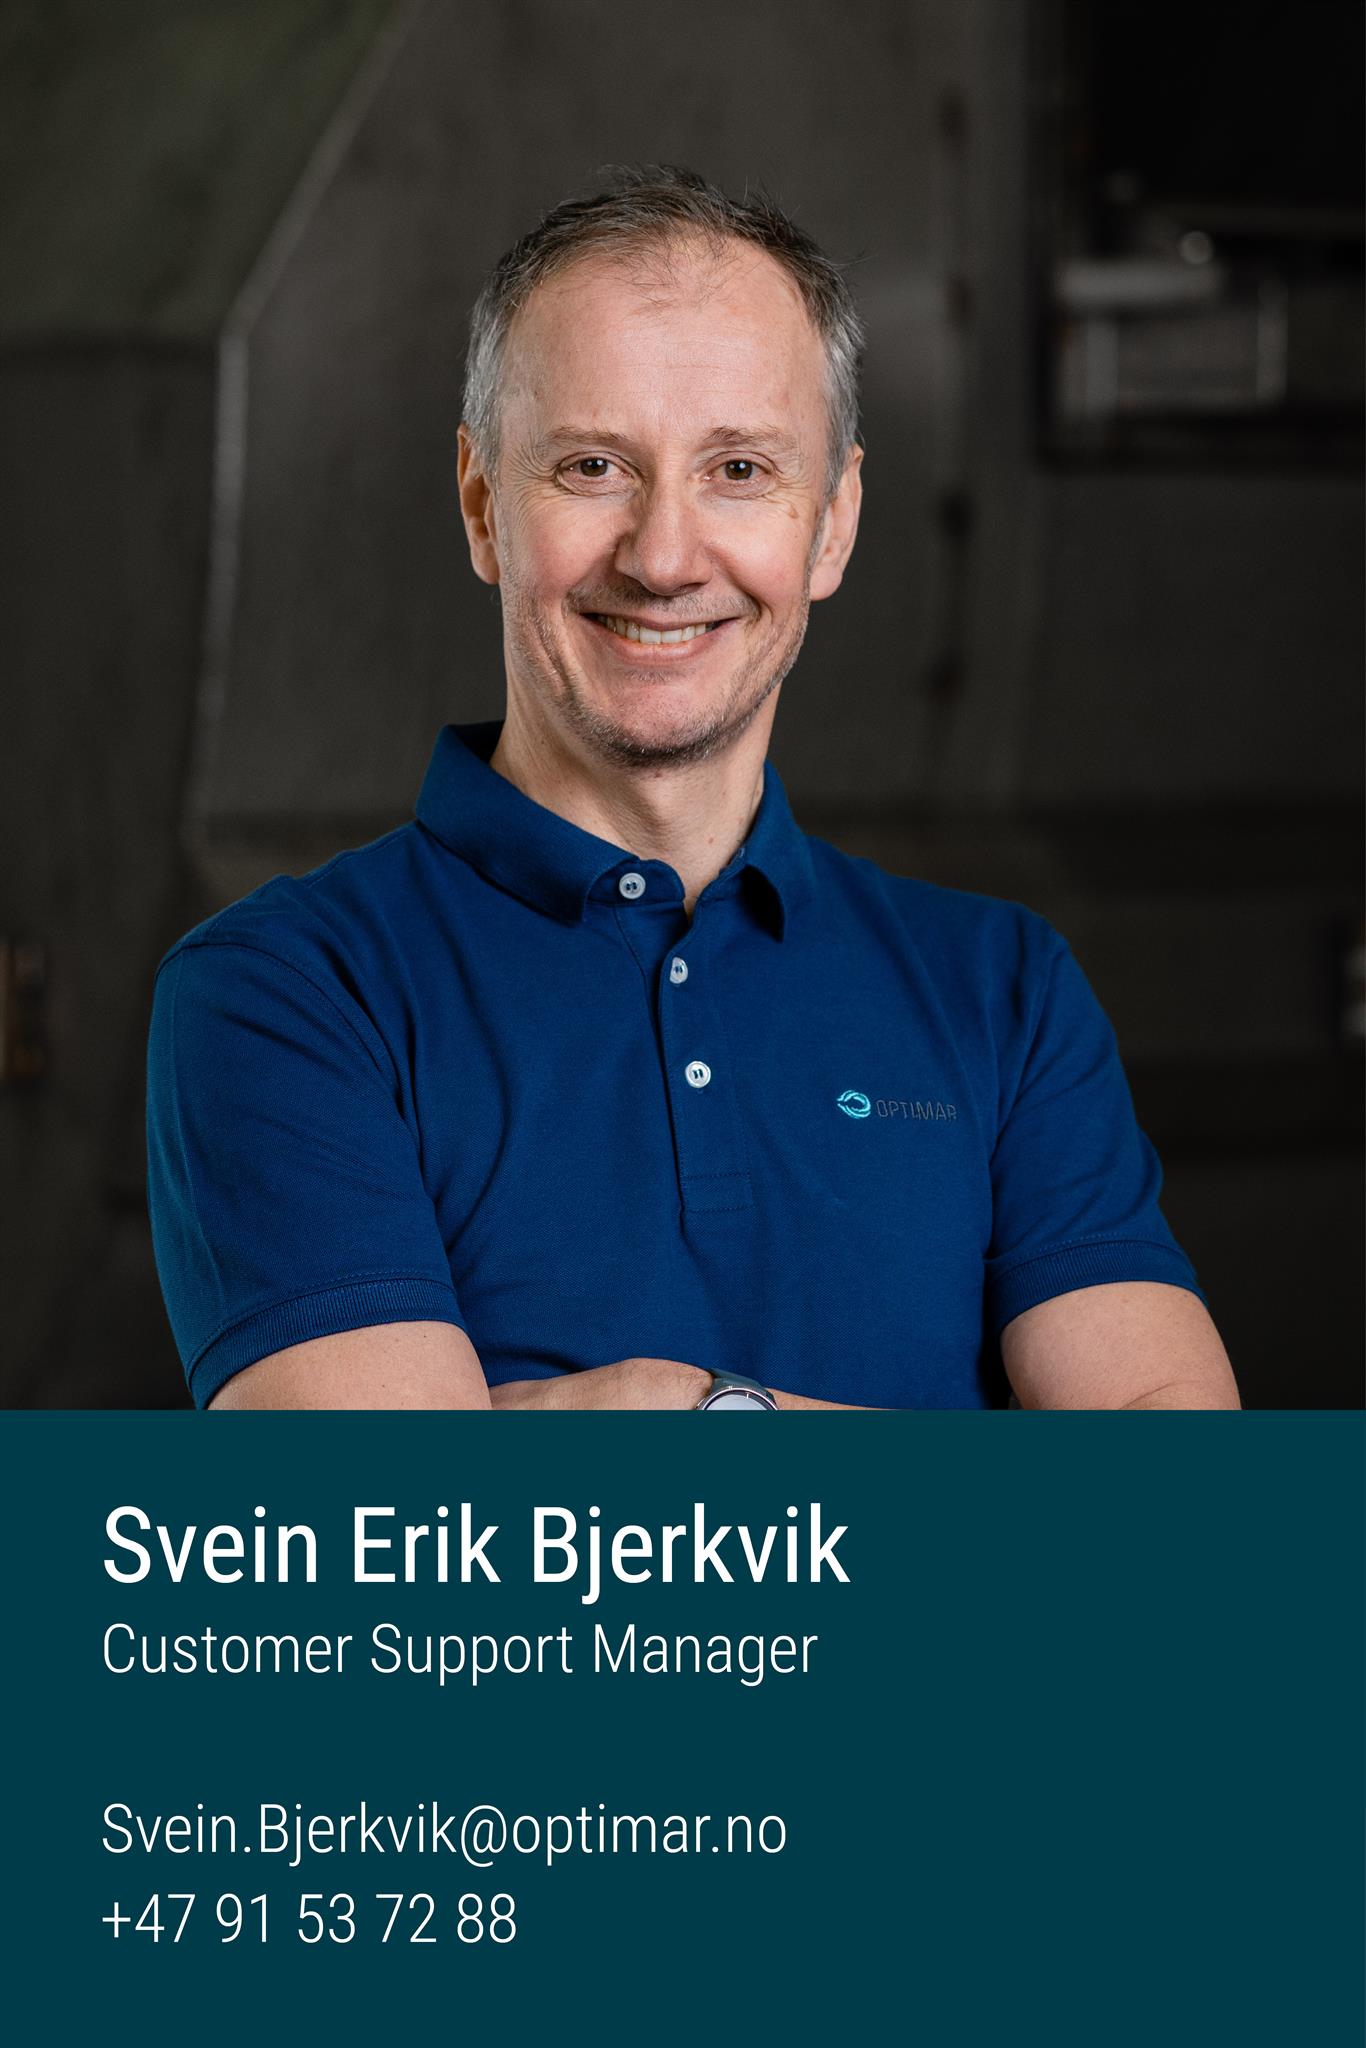 Svein Erik Bjerkvik